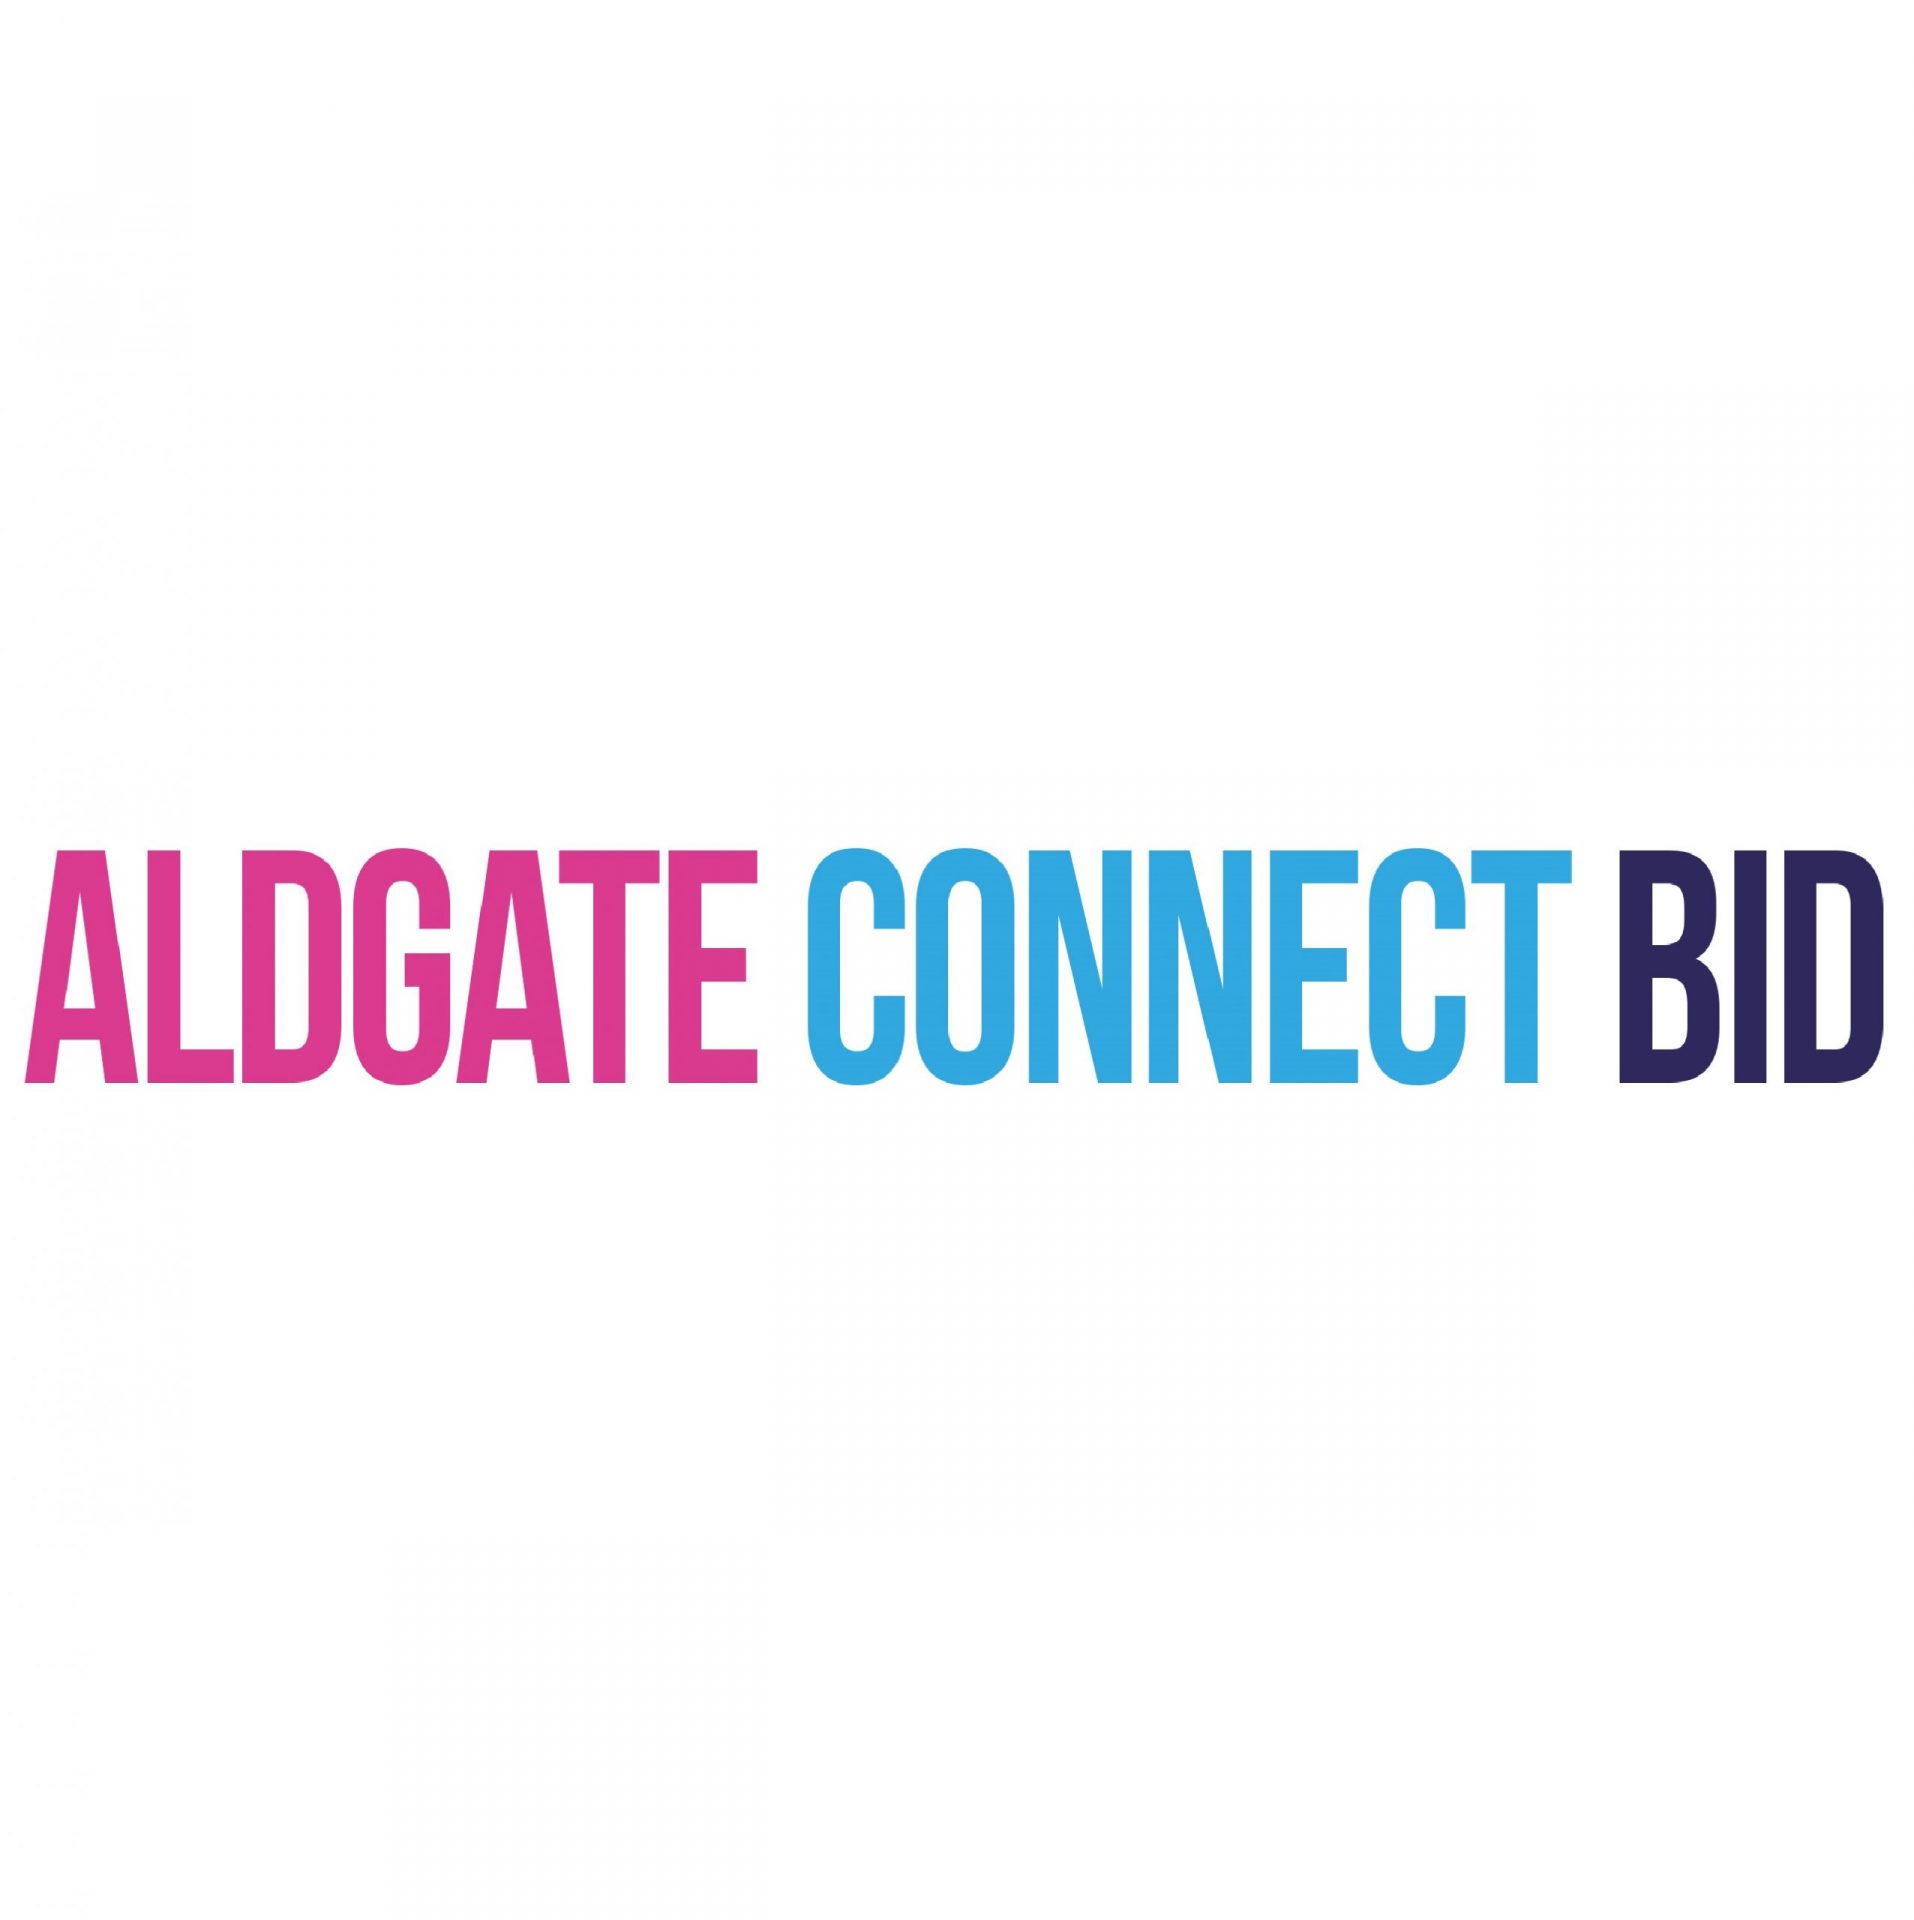 Aldgate Connect BIDs